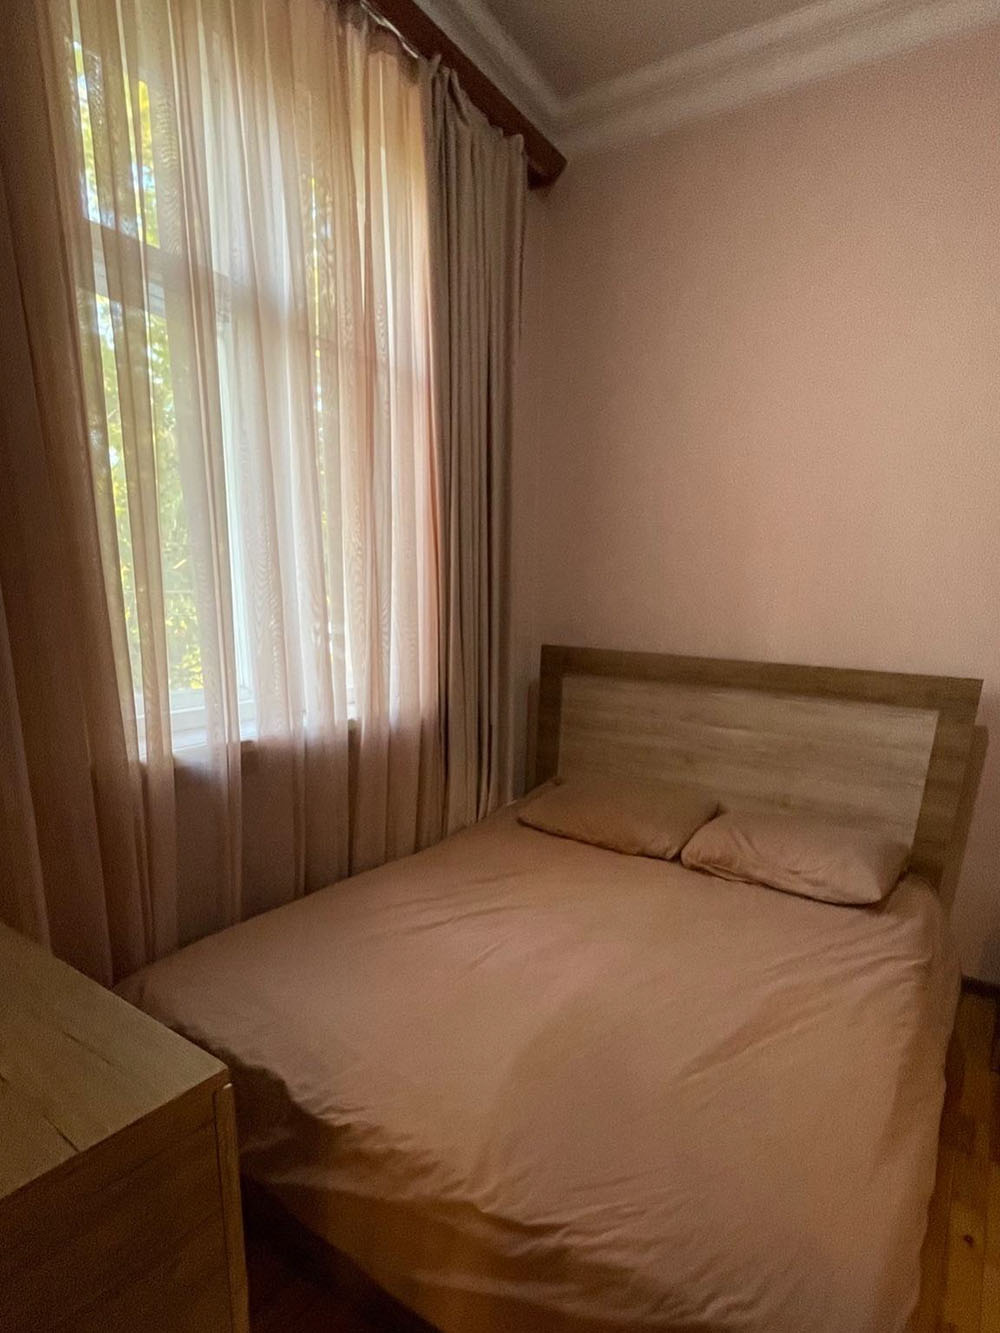 Спальня с комодом и зеркалом, справа — прикроватный столик и встроенный шкаф для одежды